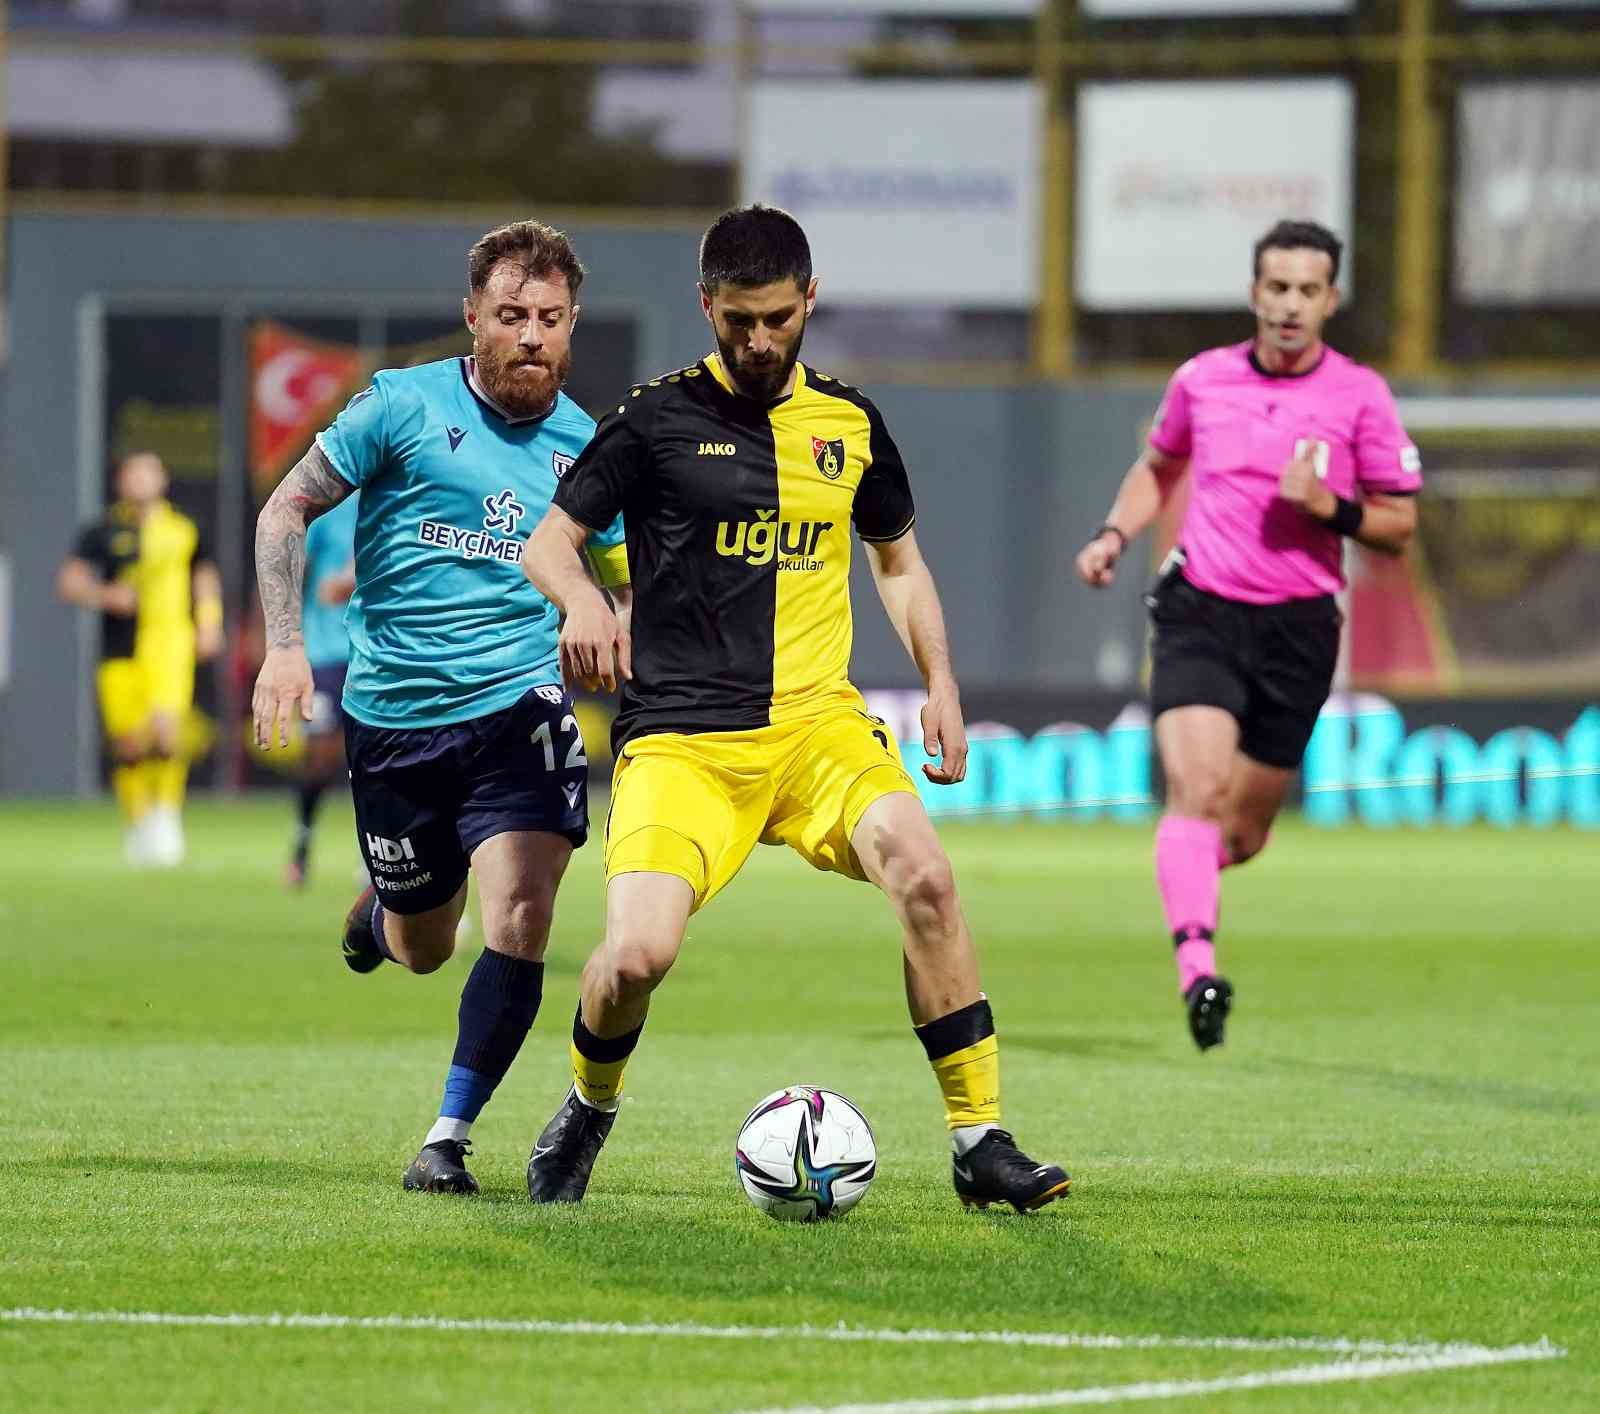 Spor Toto 1. Lig’in 38. ve son haftasında İstanbulspor sahasında karşılaştığı Bandırmaspor ile 0-0 berabere kaldı. Maçtan dakikalar 5. dakikada ...